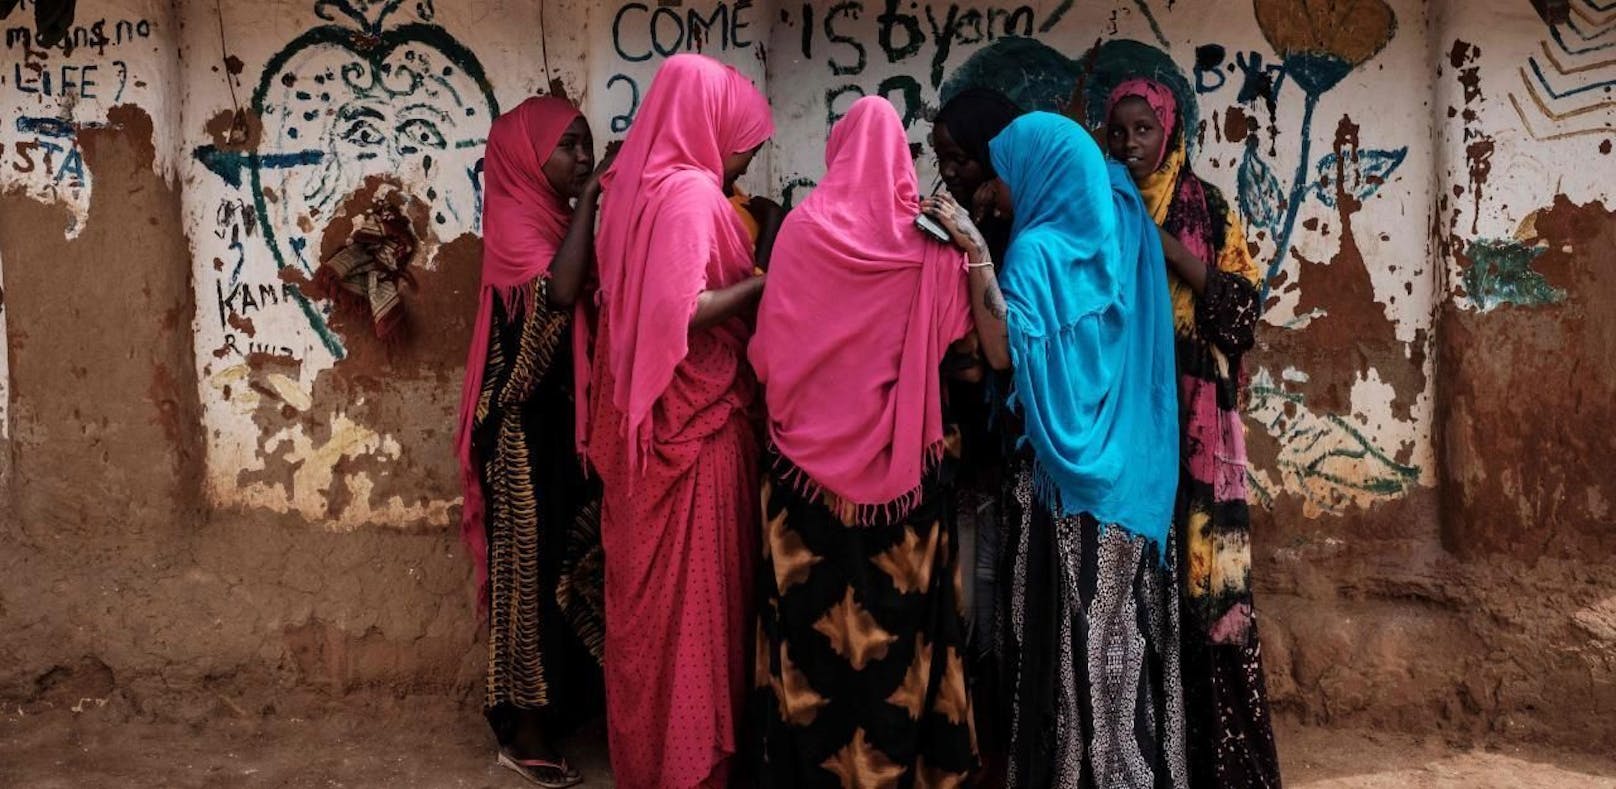 (Symbolbild) Somalische Frauen in einem Flüchtlingscamp in Kenia.